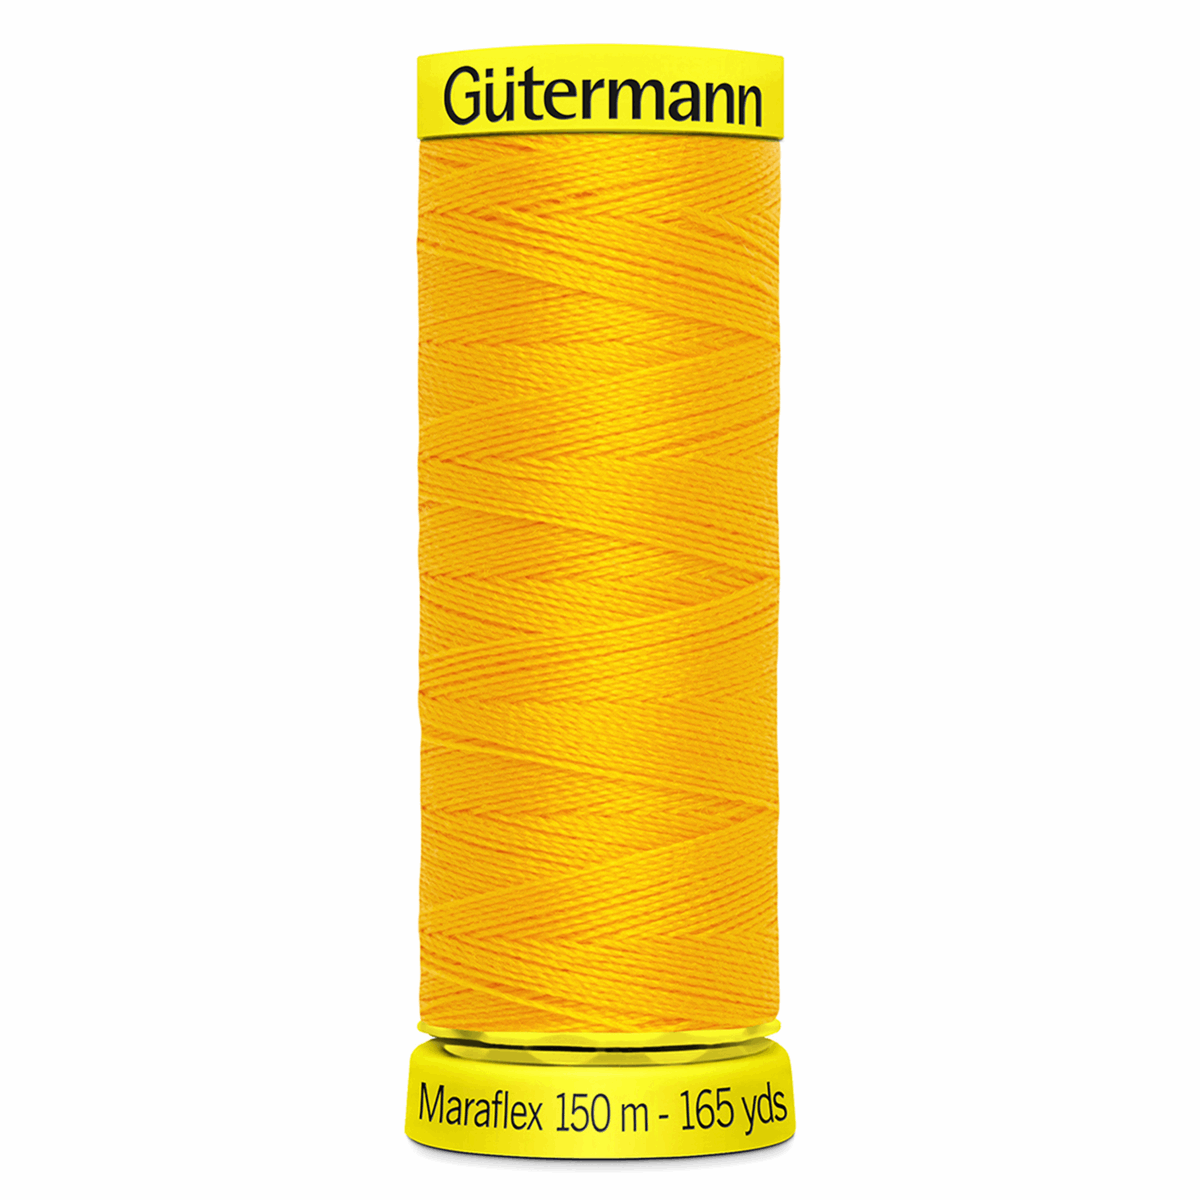 Gutermann Maraflex Elastic Sewing Thread 150m Gold 417